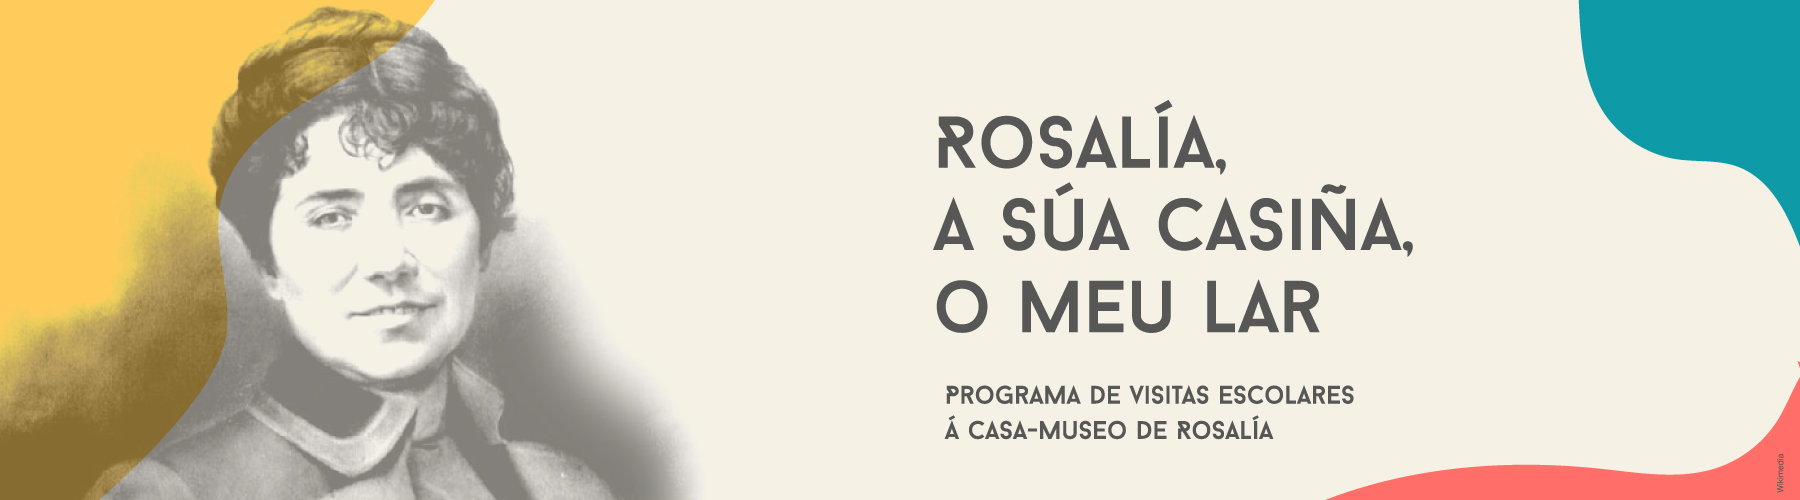 
		visitas escolares “Rosalía, a súa casiña, o meu lar” a la Casa-Museo de Rosalía
	